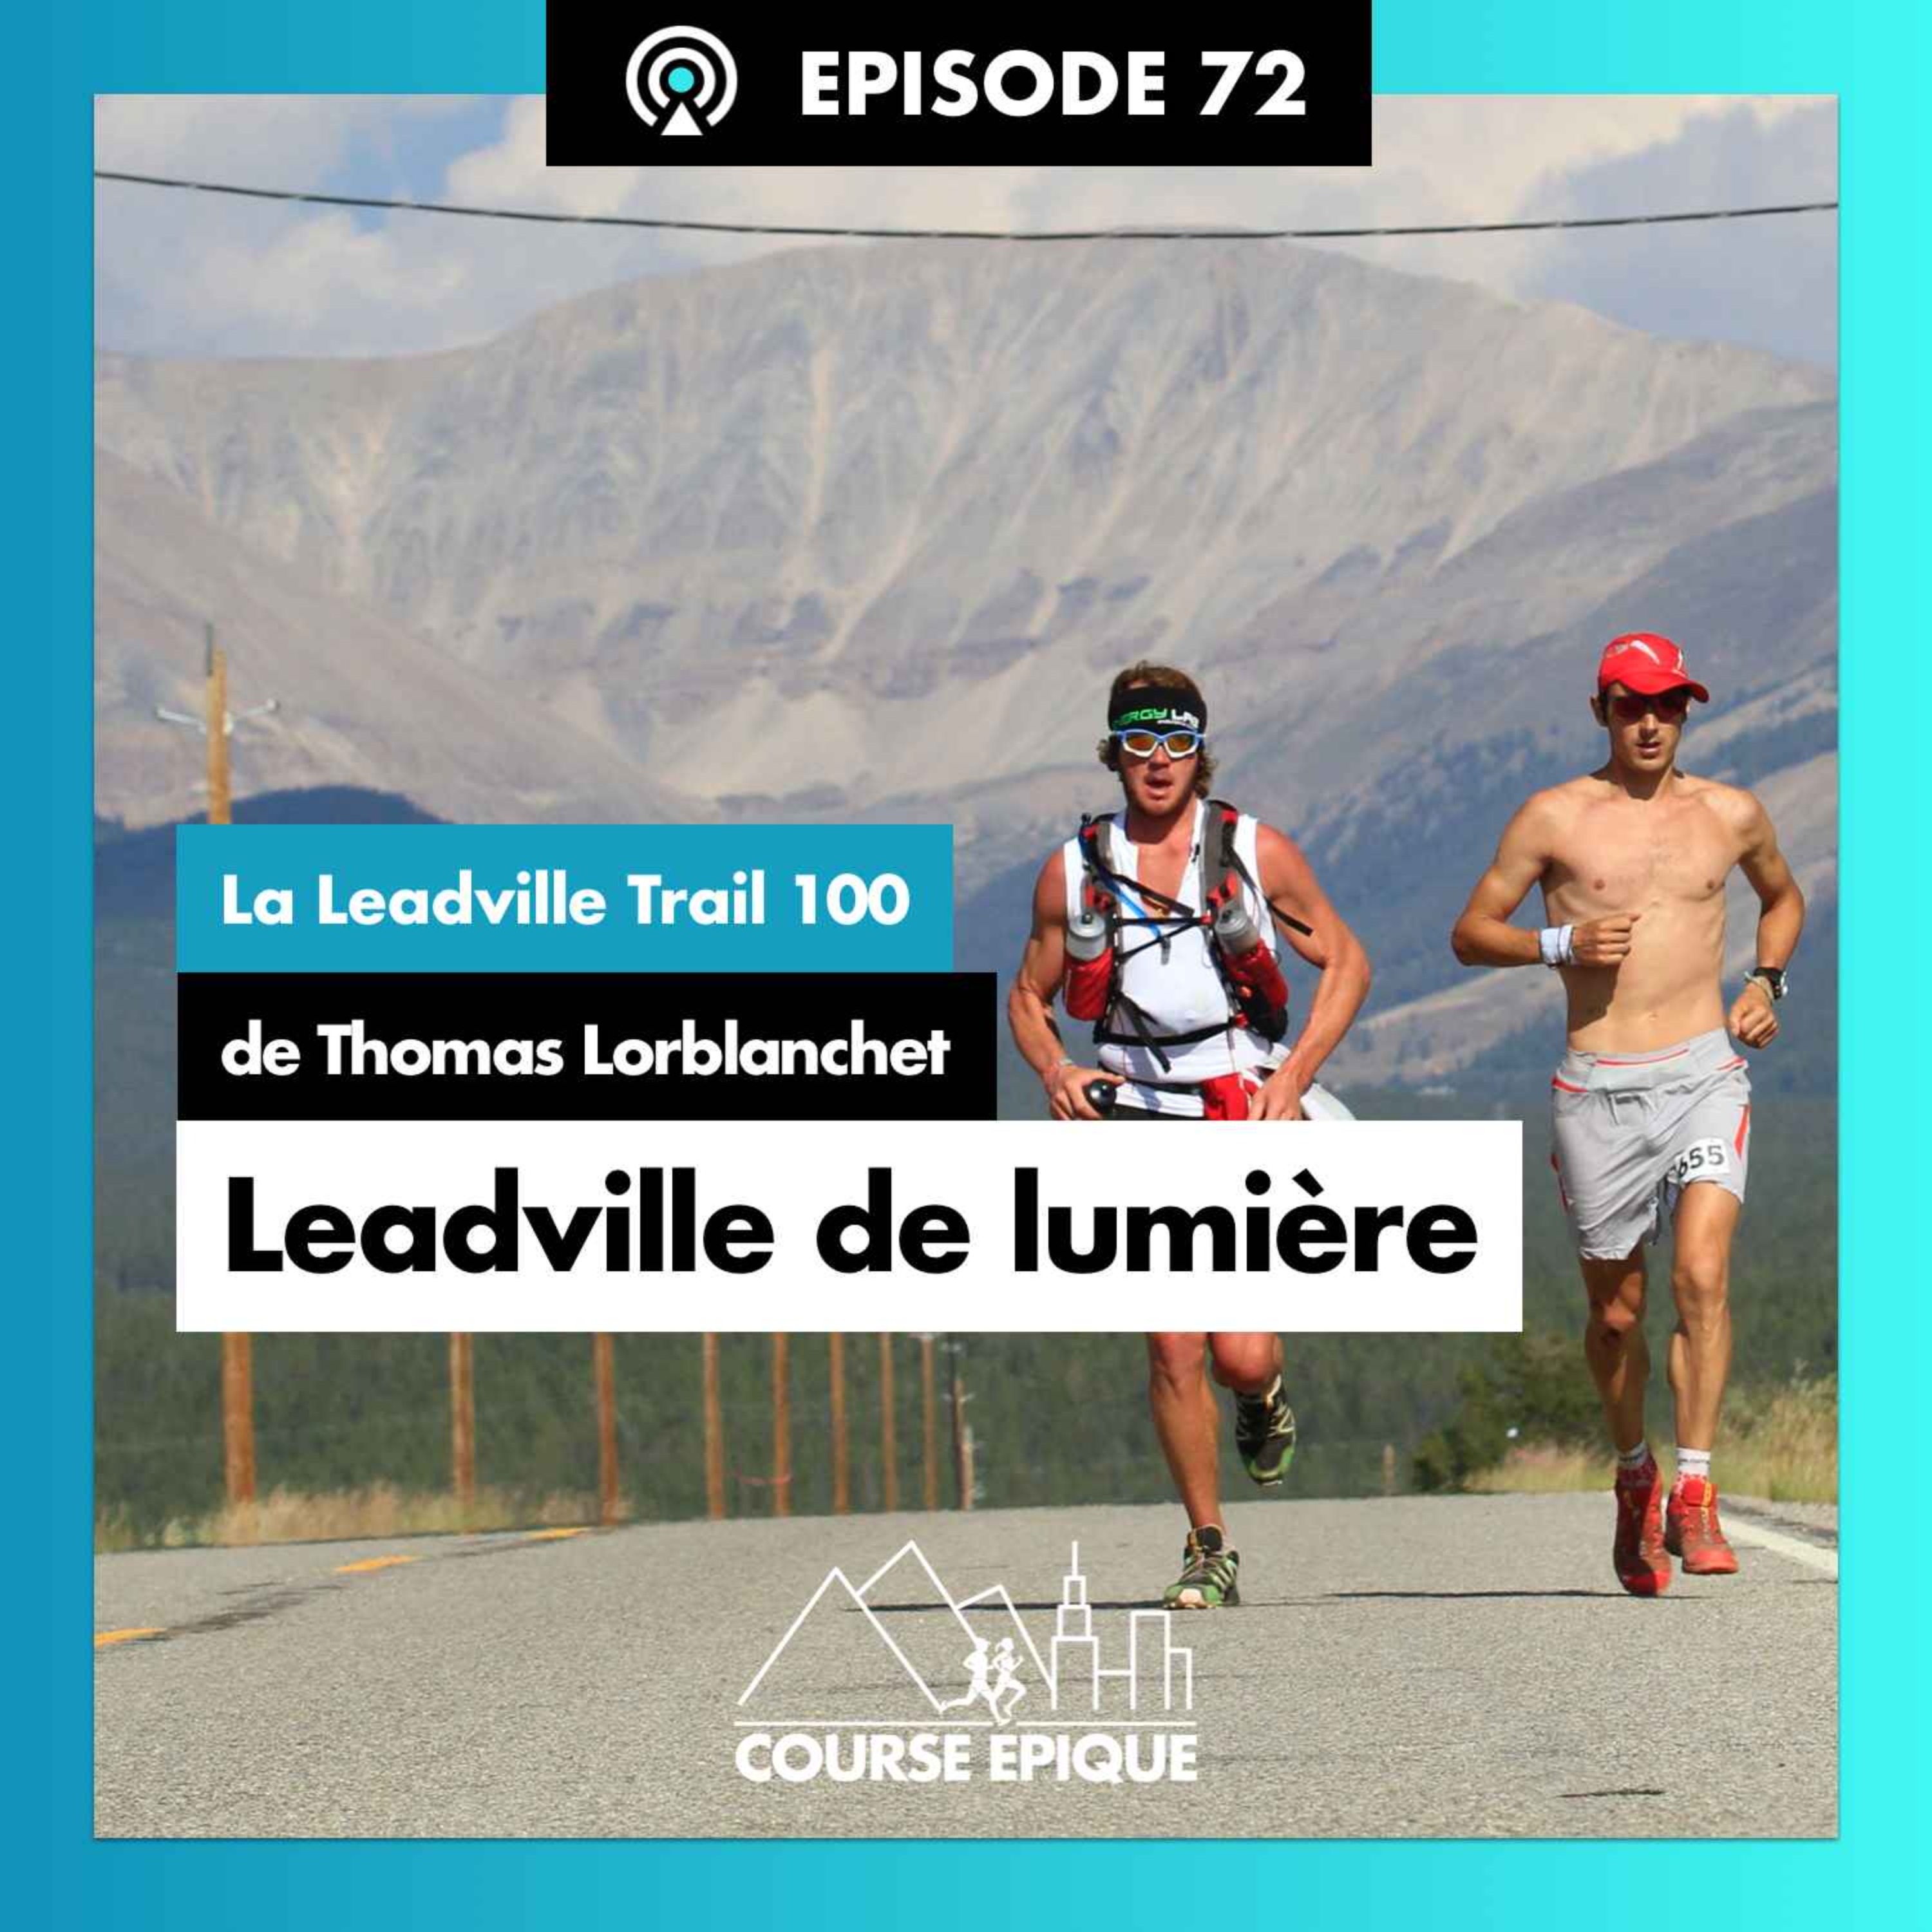 #72 "Leadville de lumière", La Leadville Trail 100 de Thomas Lorblanchet